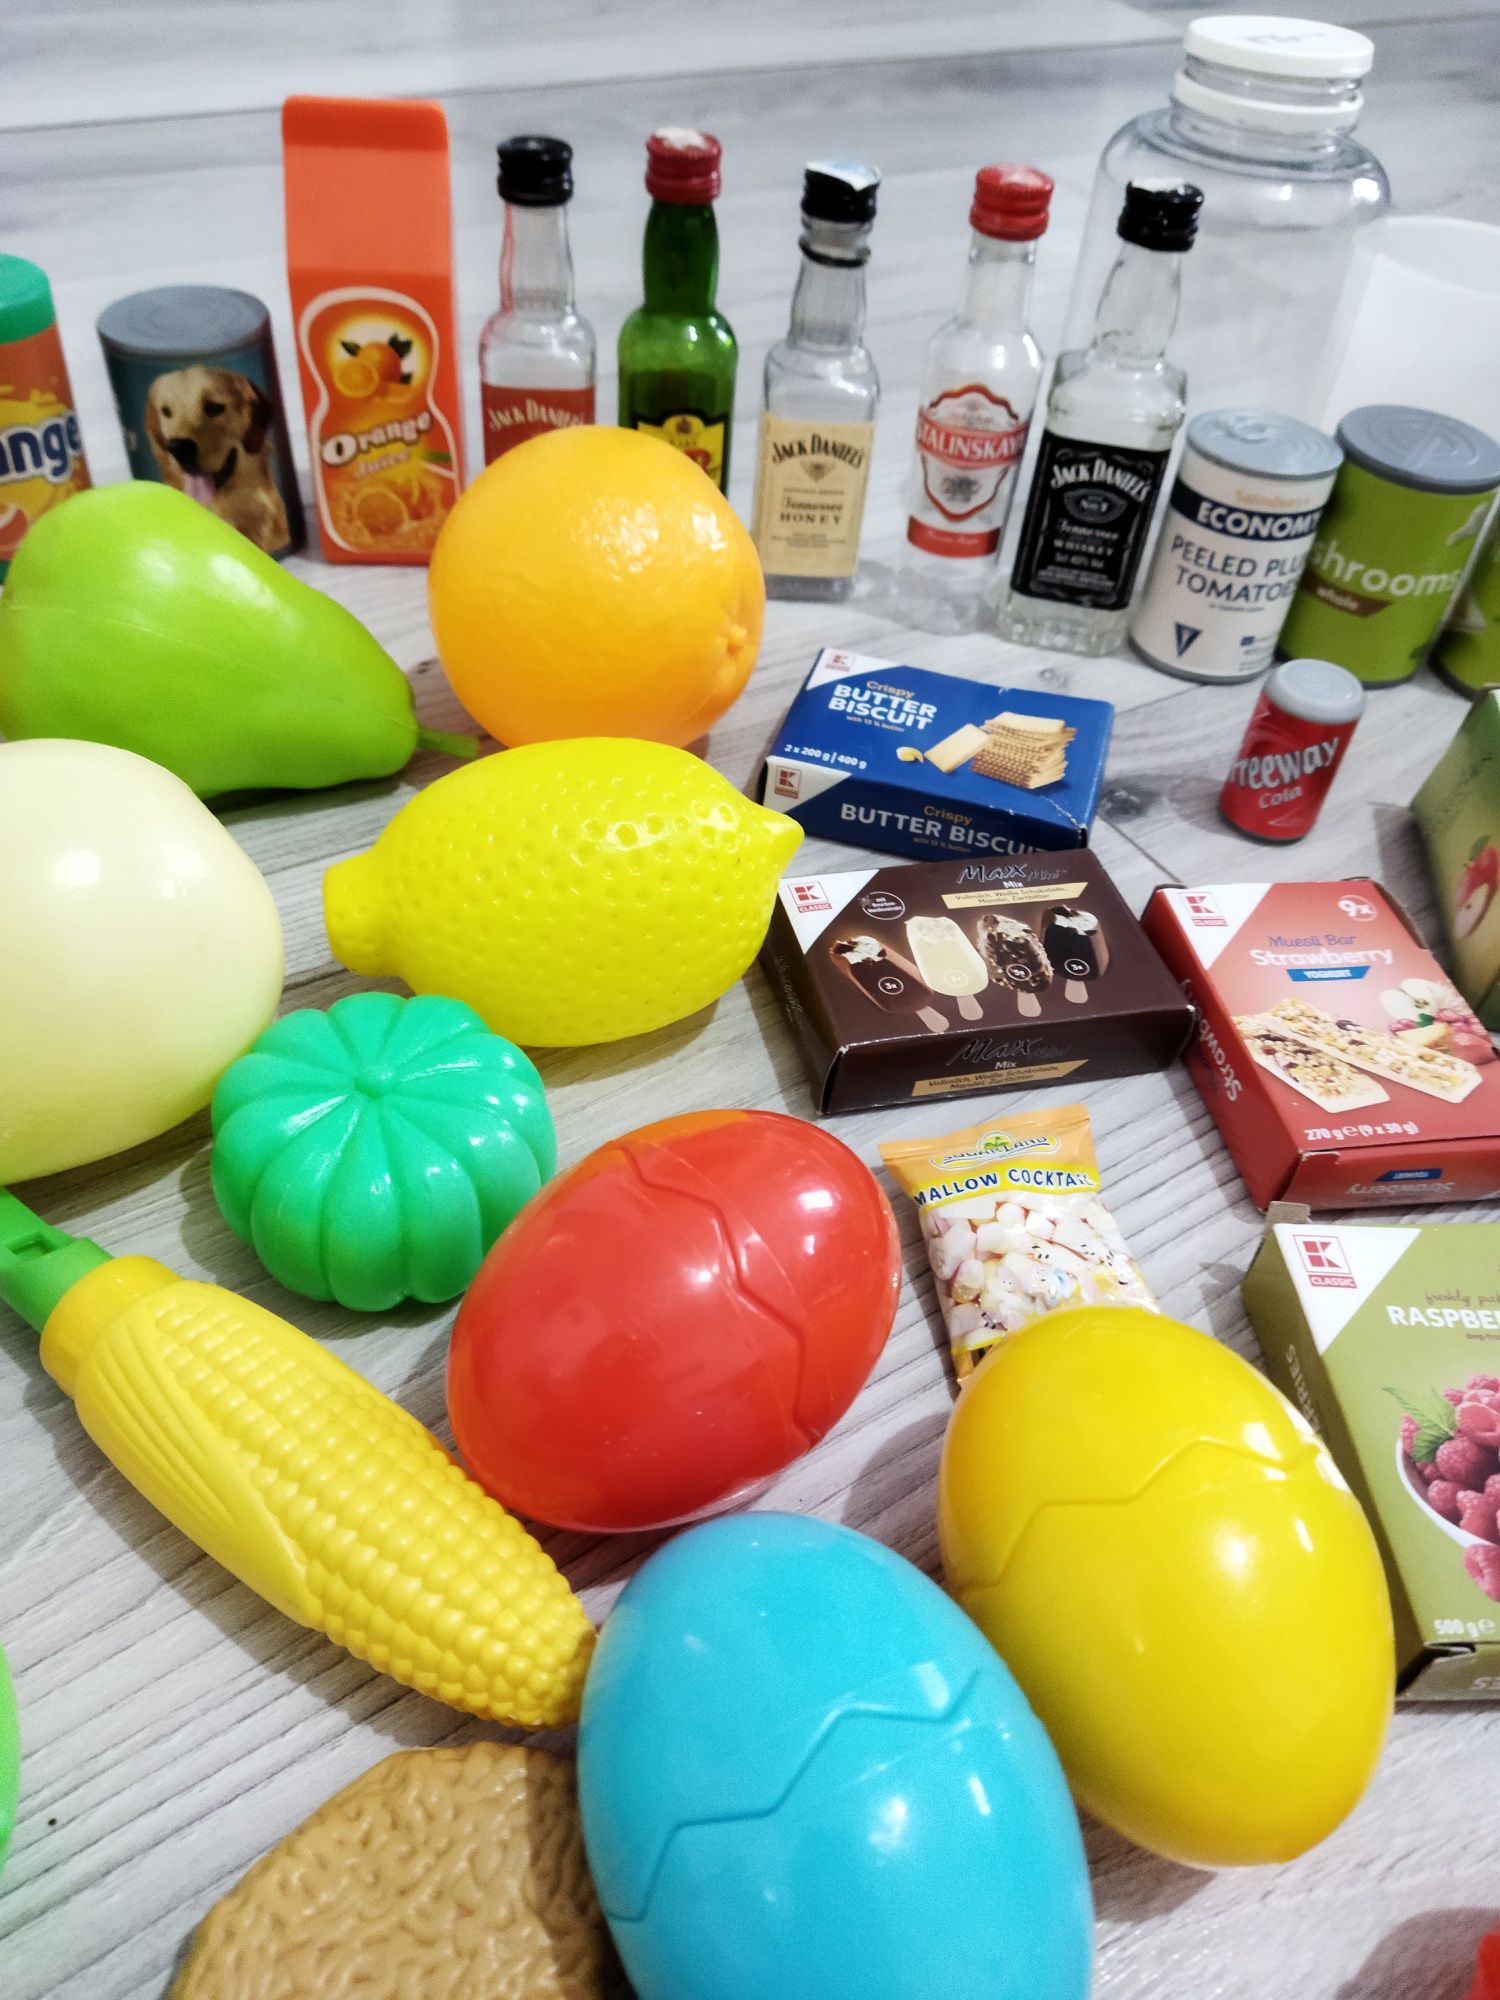 Lot de jucării accesorii mâncare fructe legume băutură bucătărie copii